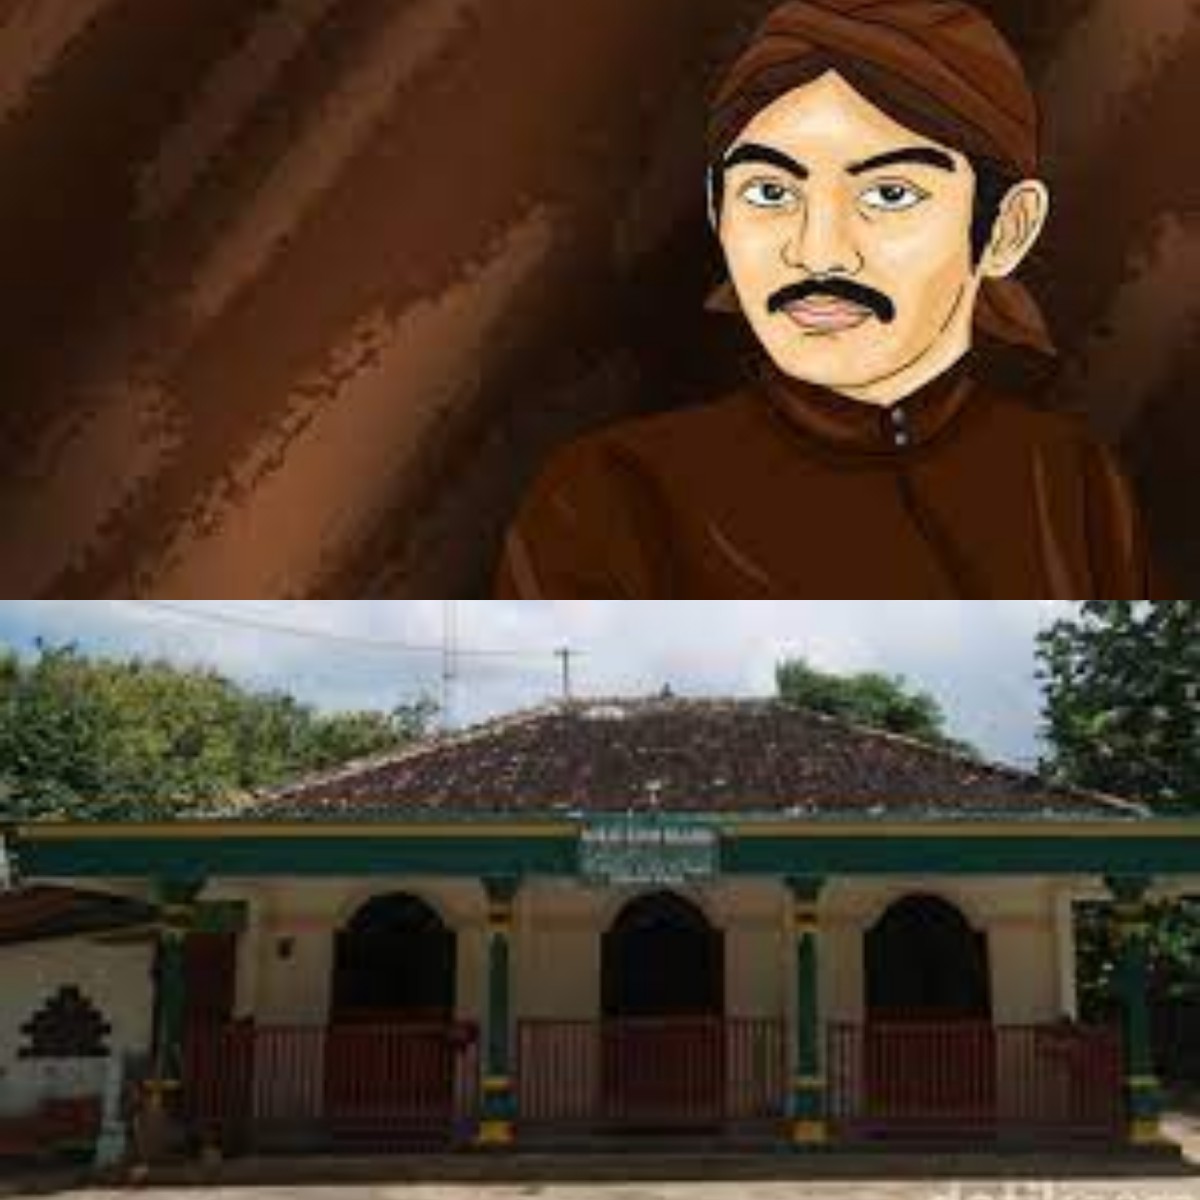 Mengenal Sejarah Masjid Sunan Kalijaga di Gunung Kidul yang Jadi Saksi Penyebaran Islam di Tanah Jawa 